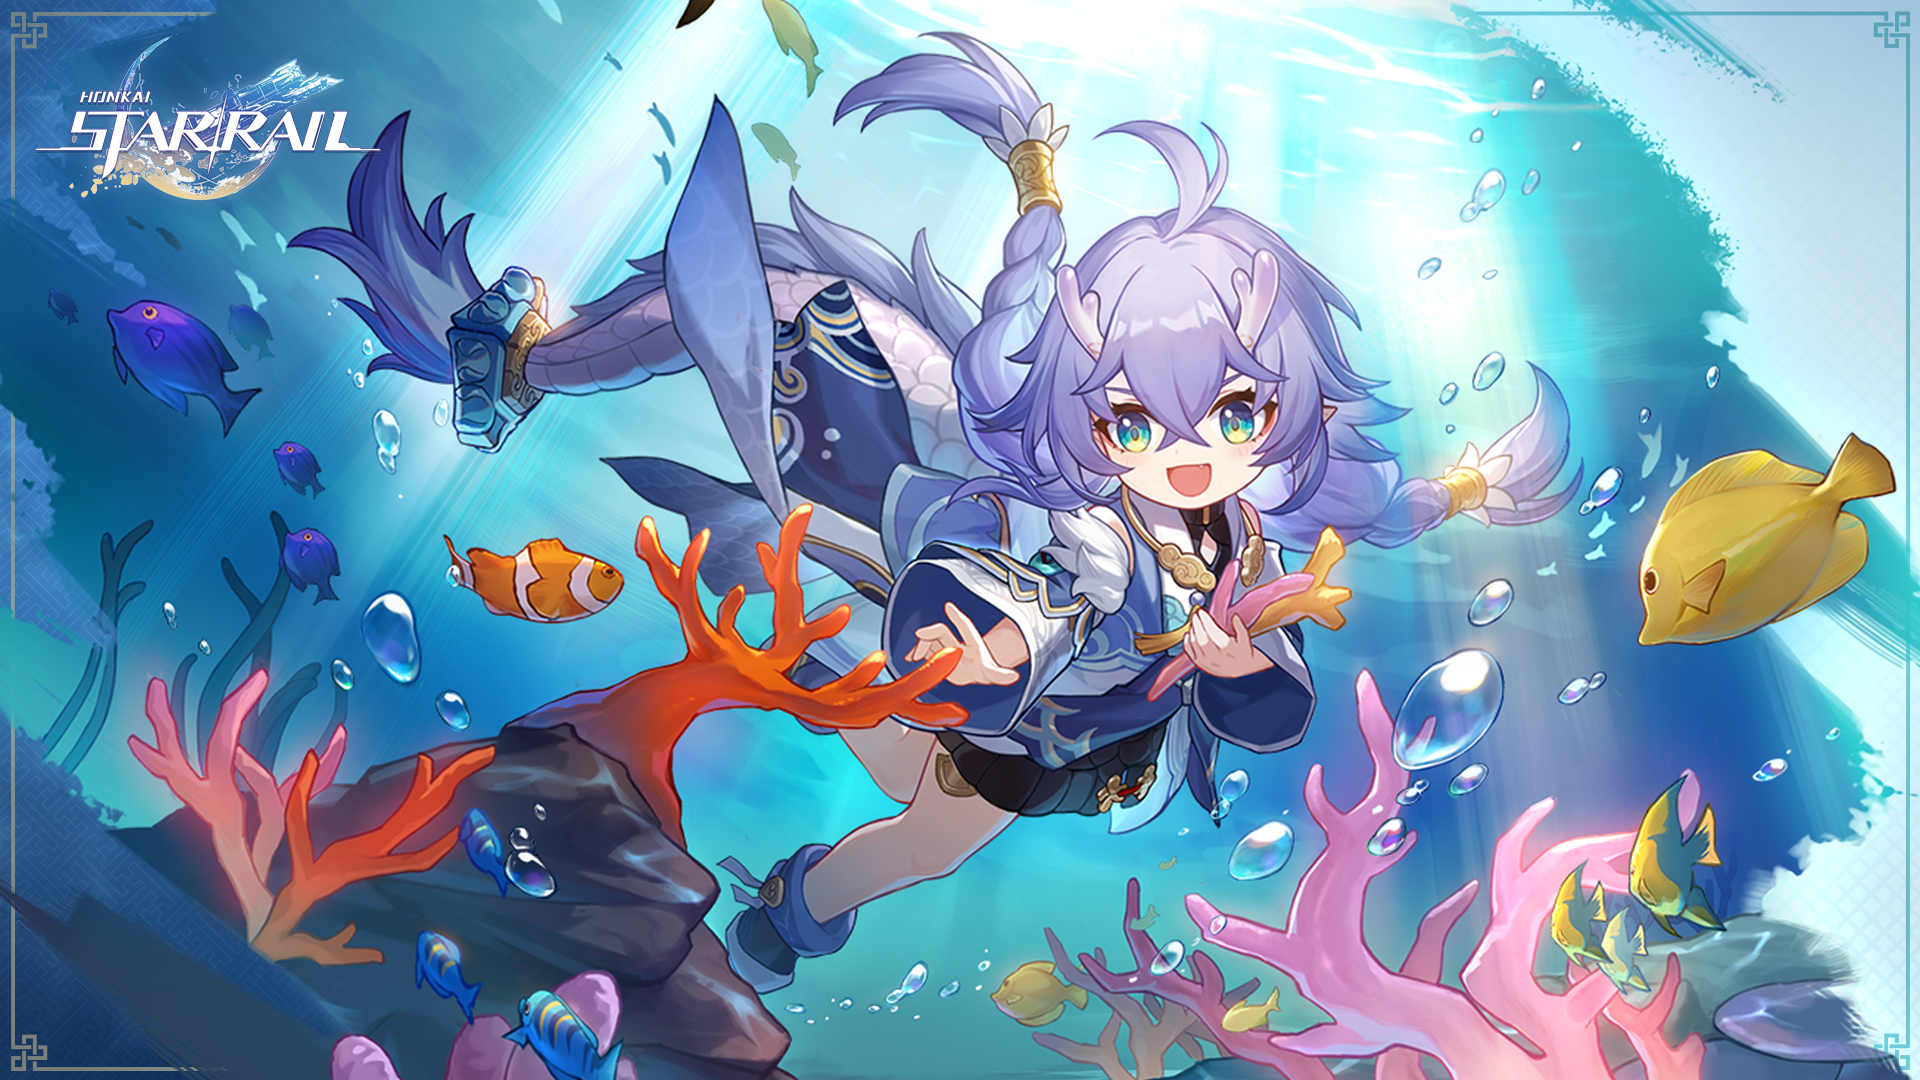 Un key-art oficial de Honkai: Star Rail que presenta a Bailu, un niño pequeño con cabello púrpura y cuernos cortos como los de un ciervo, nadando bajo el agua, alrededor de peces y corales.